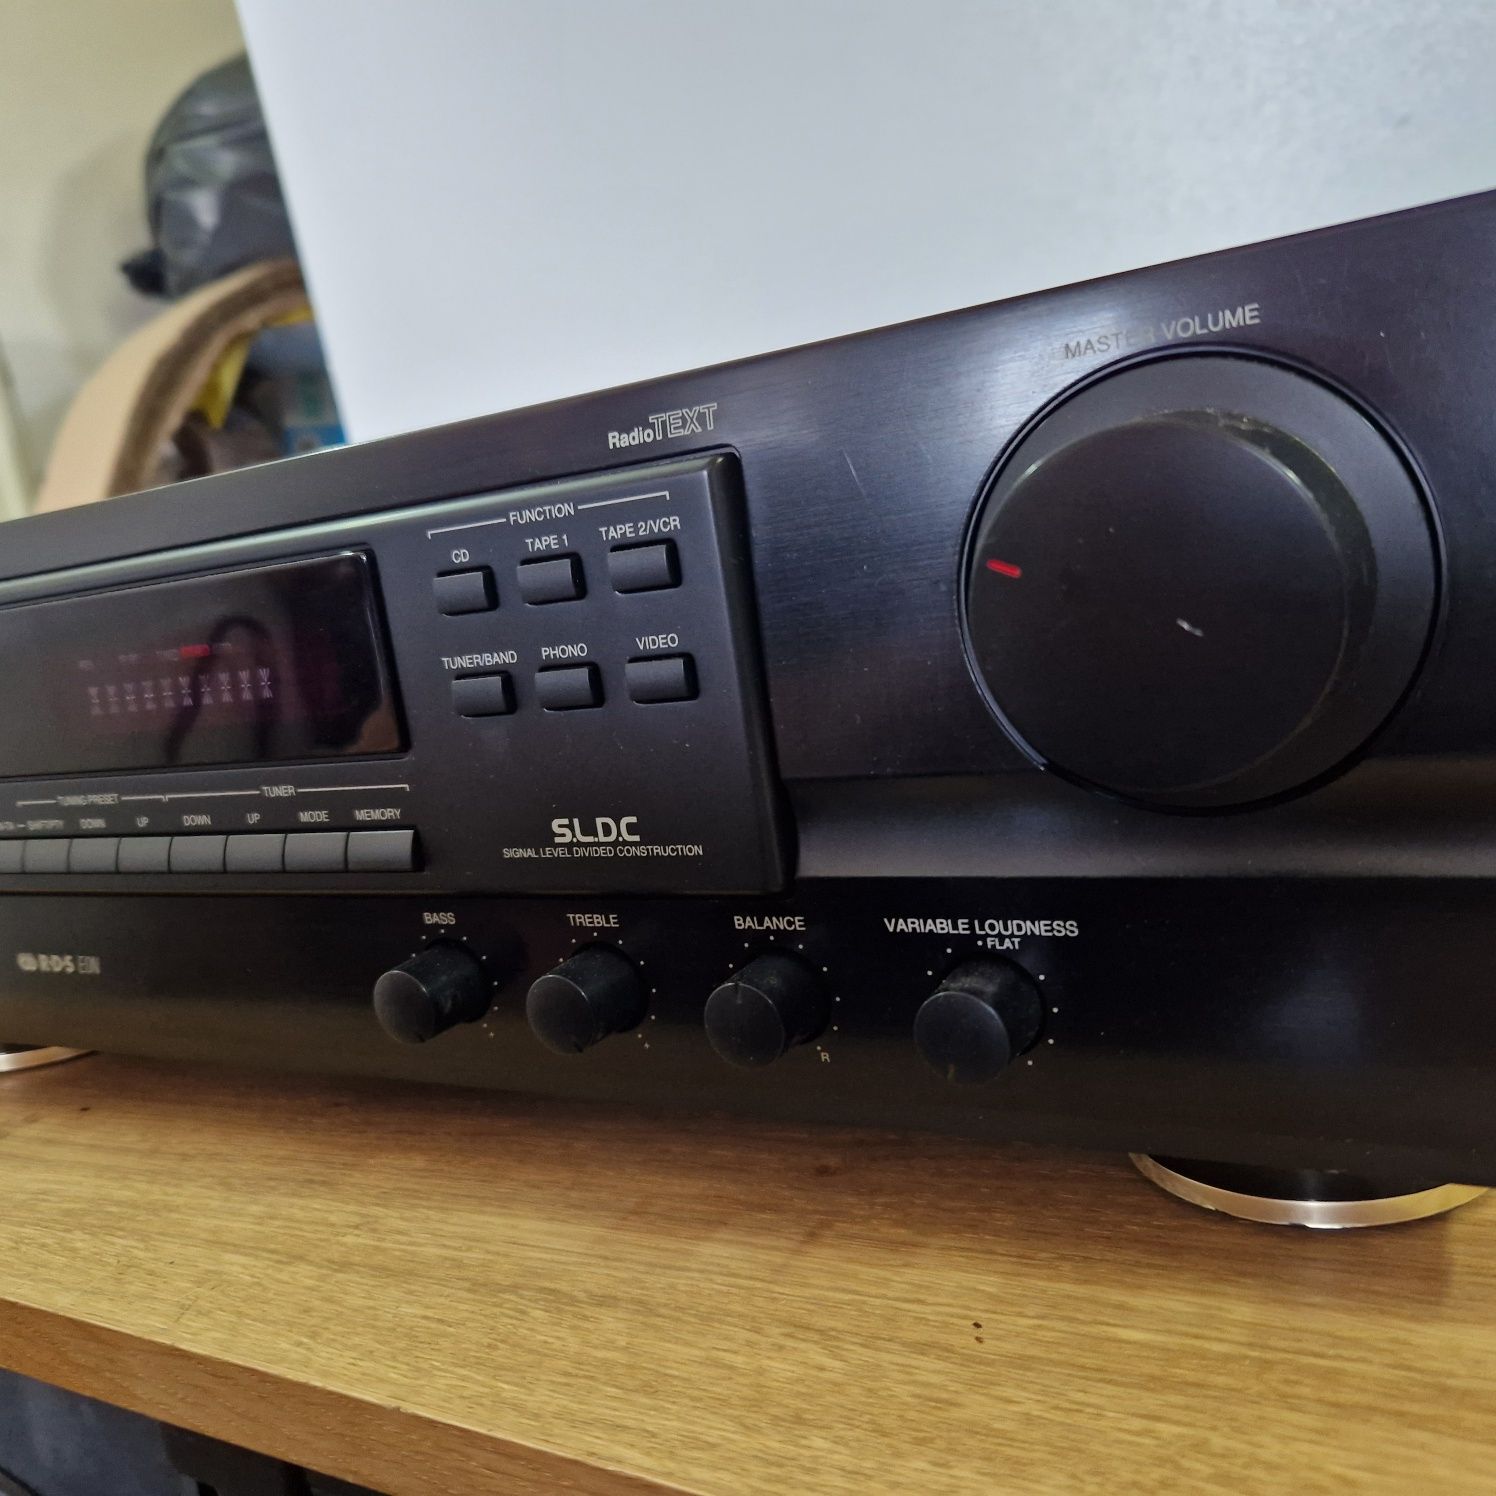 Amplituner stereo denon dra-275rd